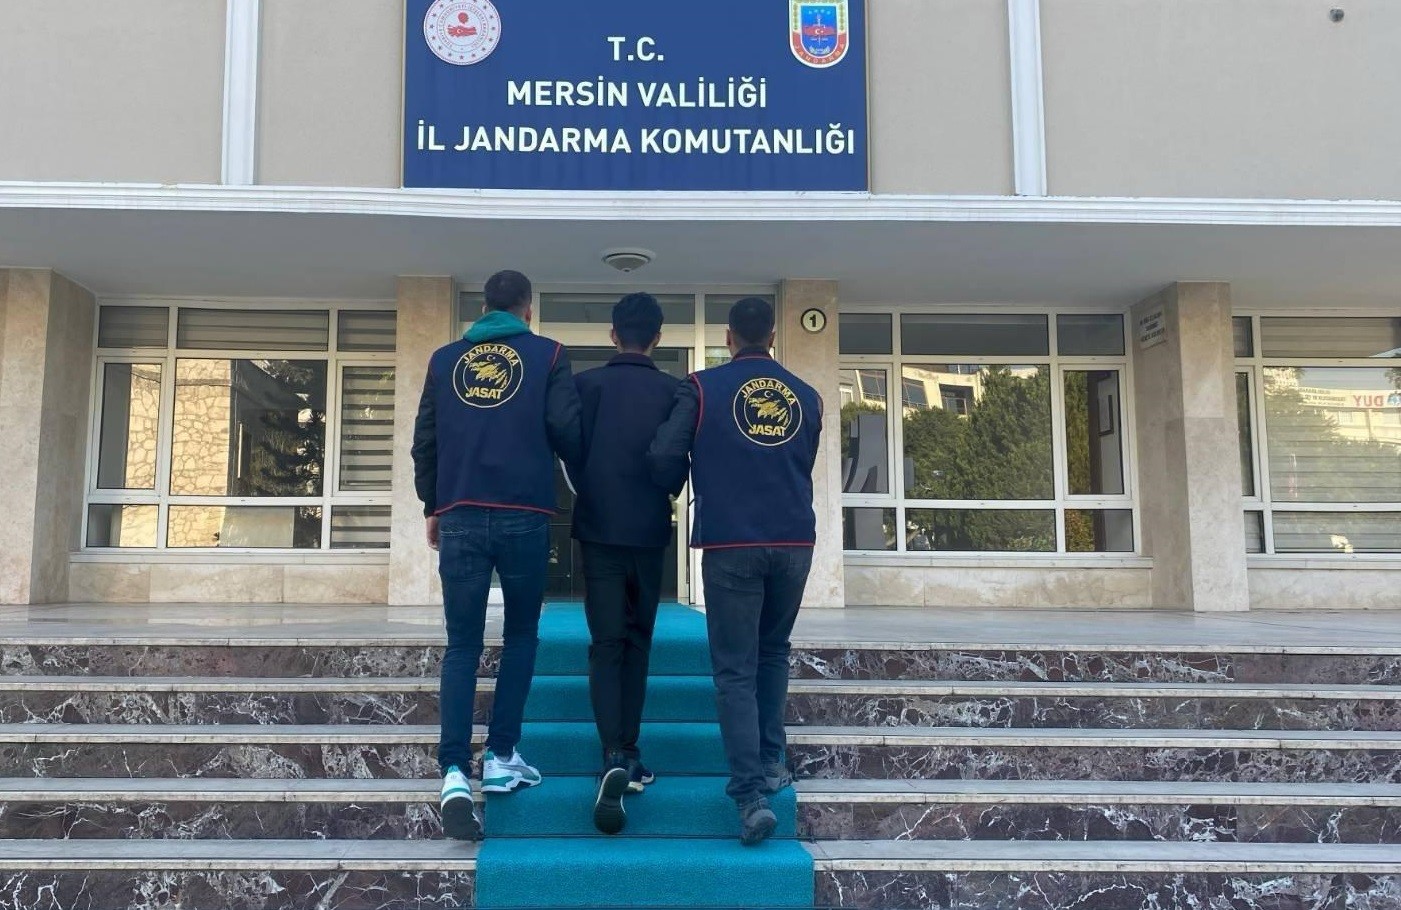 Mersin'de aranan şahıslara yönelik operasyon '37 tutuklama'